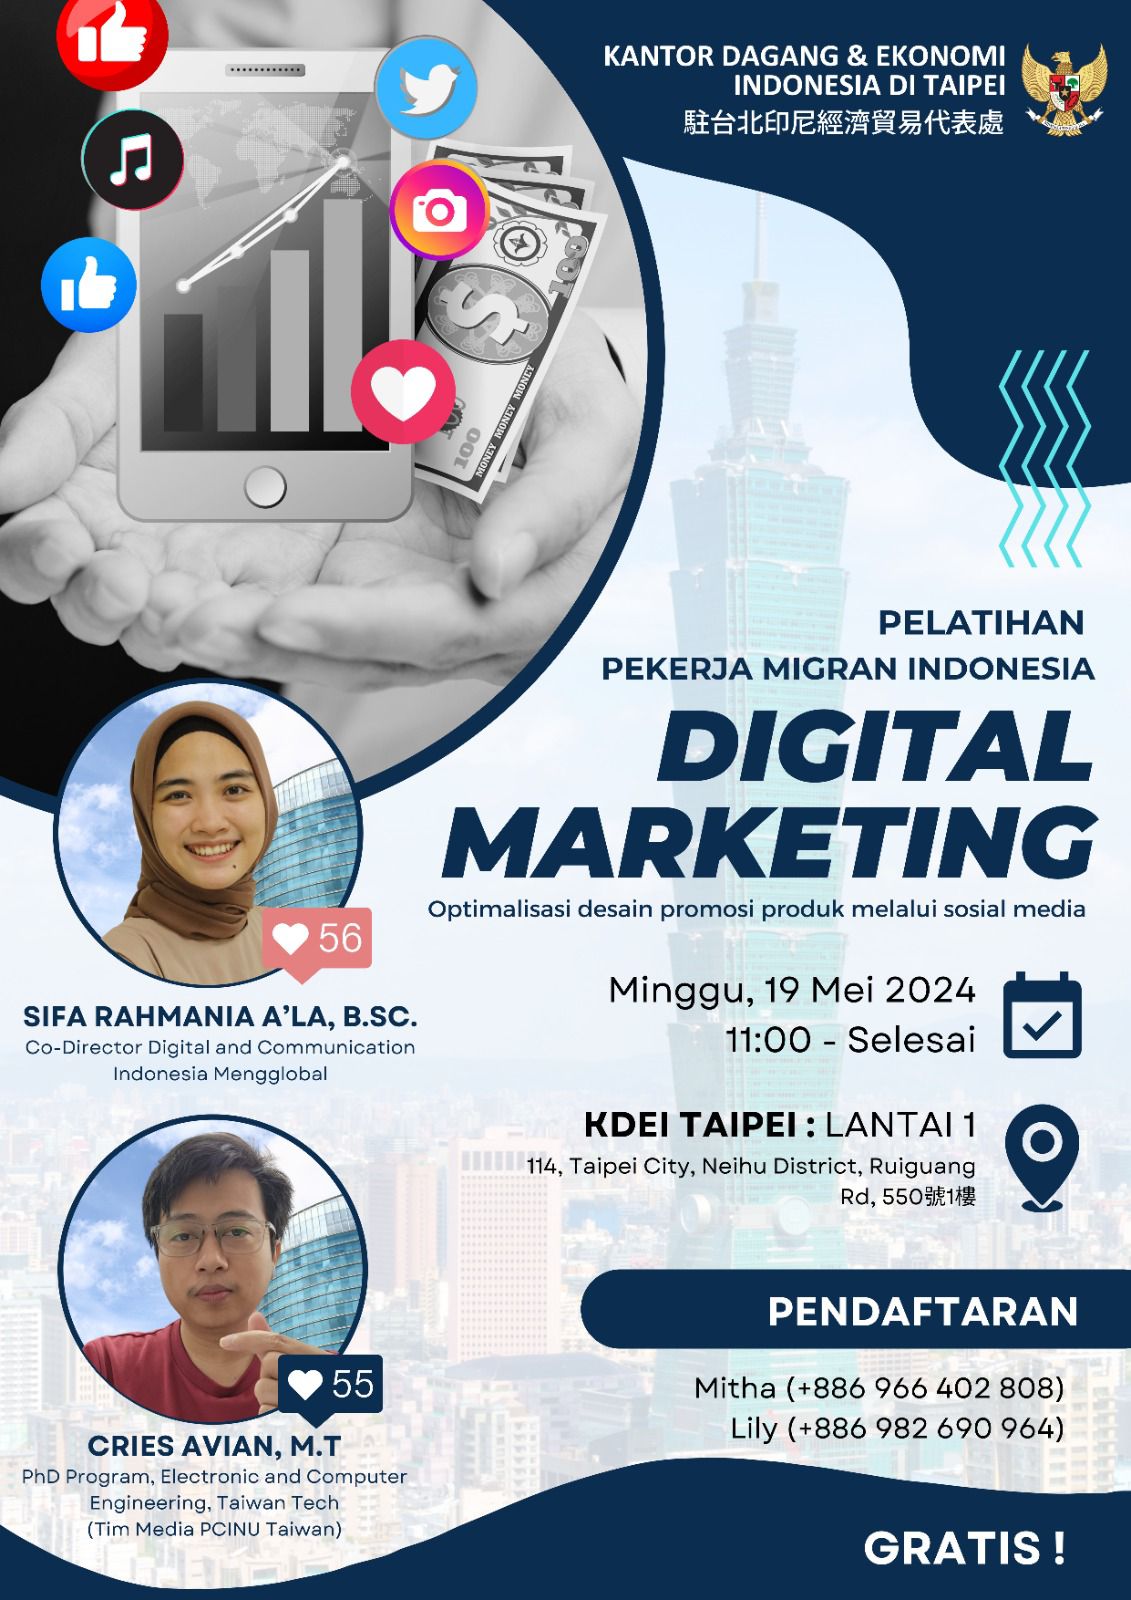  Pelatihan Digital Marketing untuk Pekerja Migran Indonesia